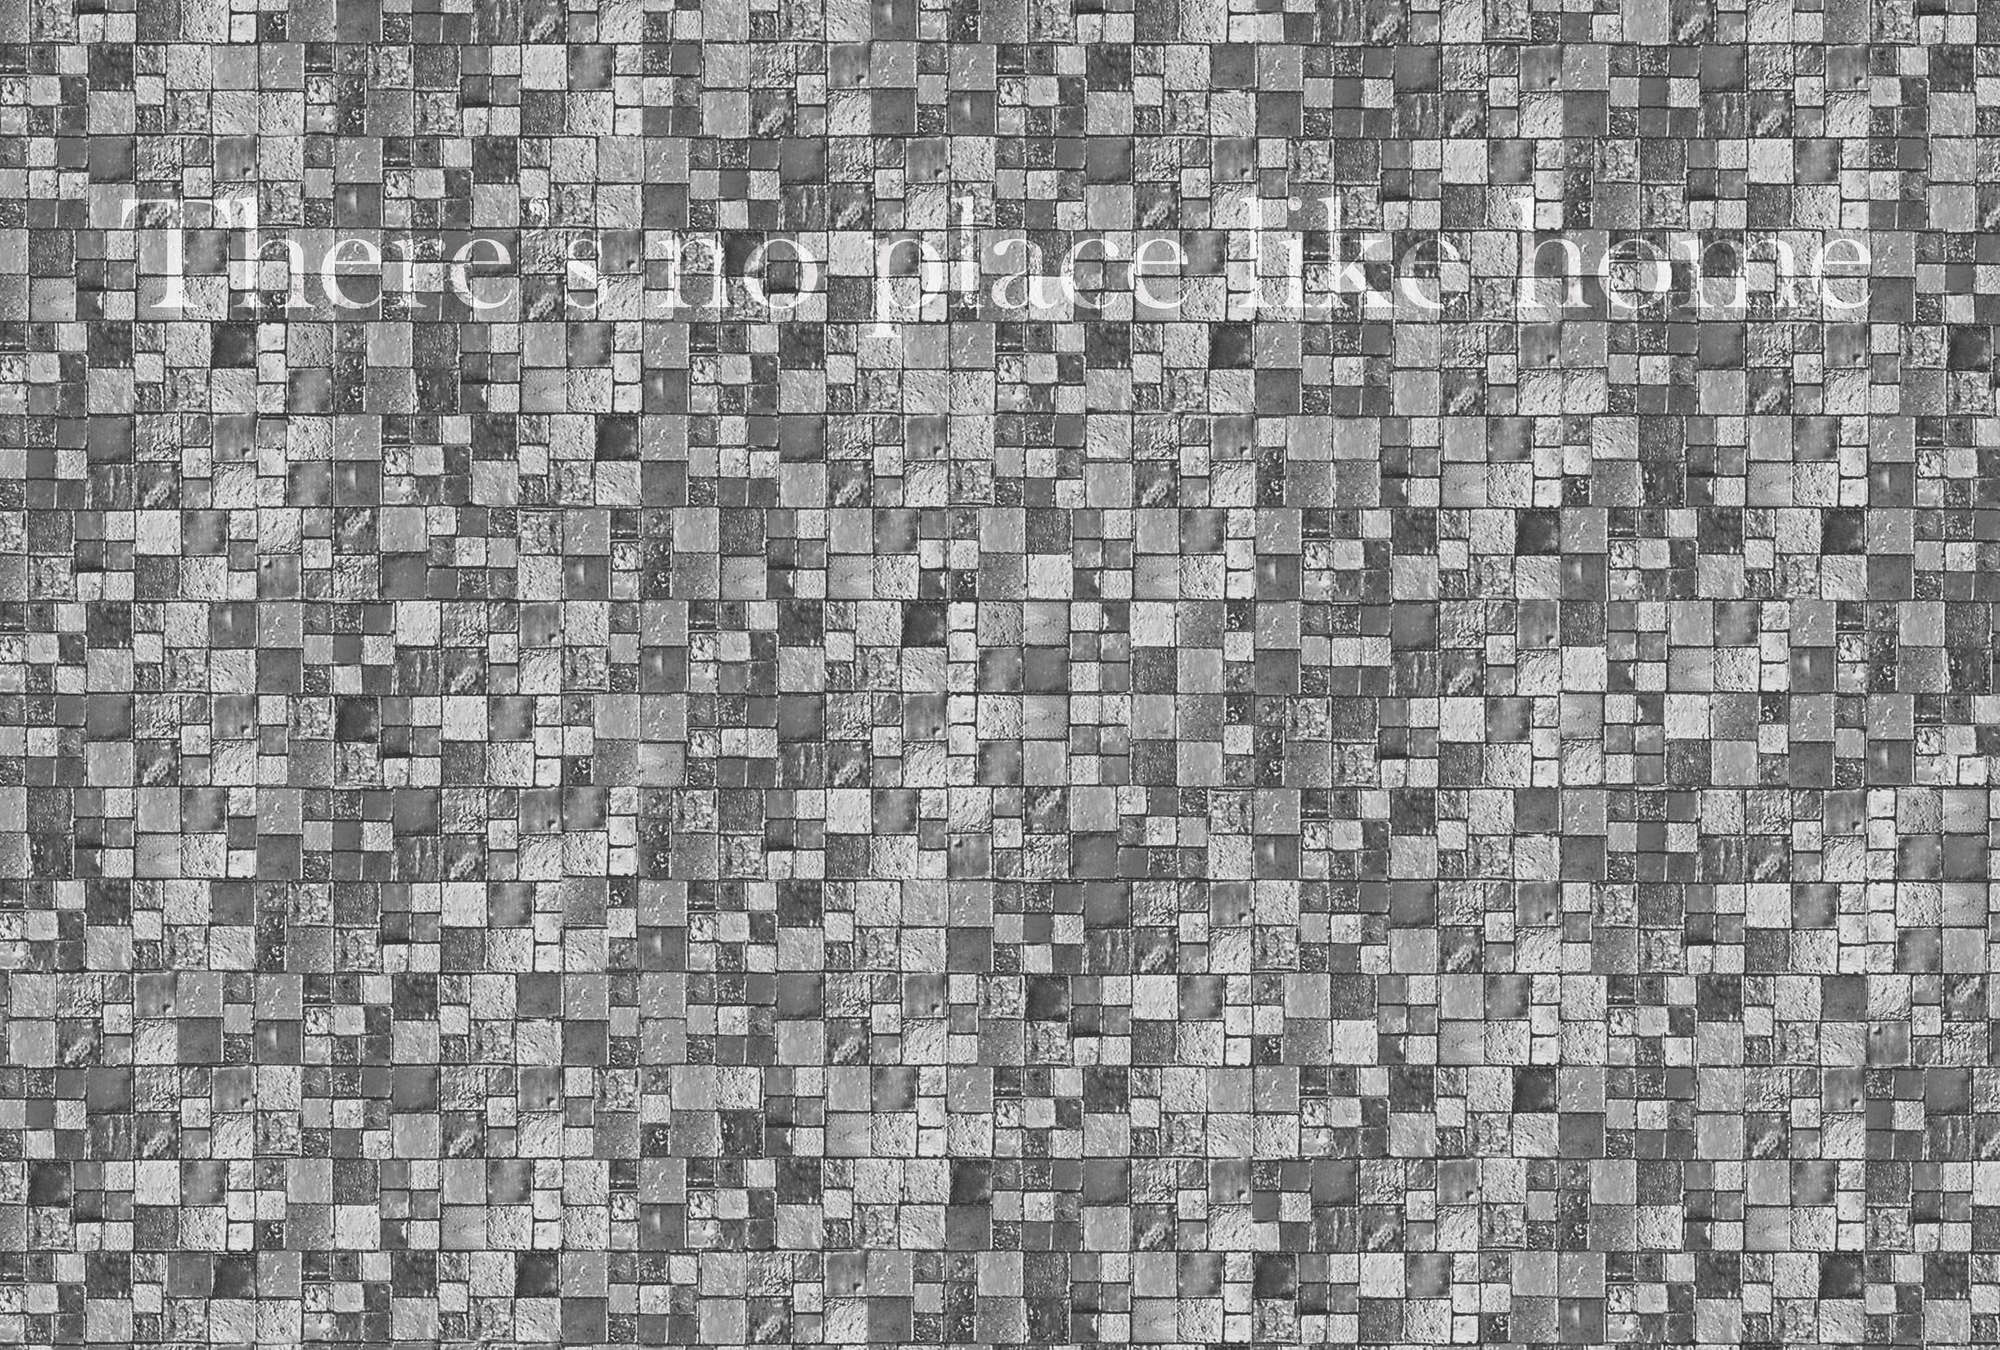             Fototapete Mosaik, graue Steinoptik & Spruch – Weiß, Grau, Schwarz
        